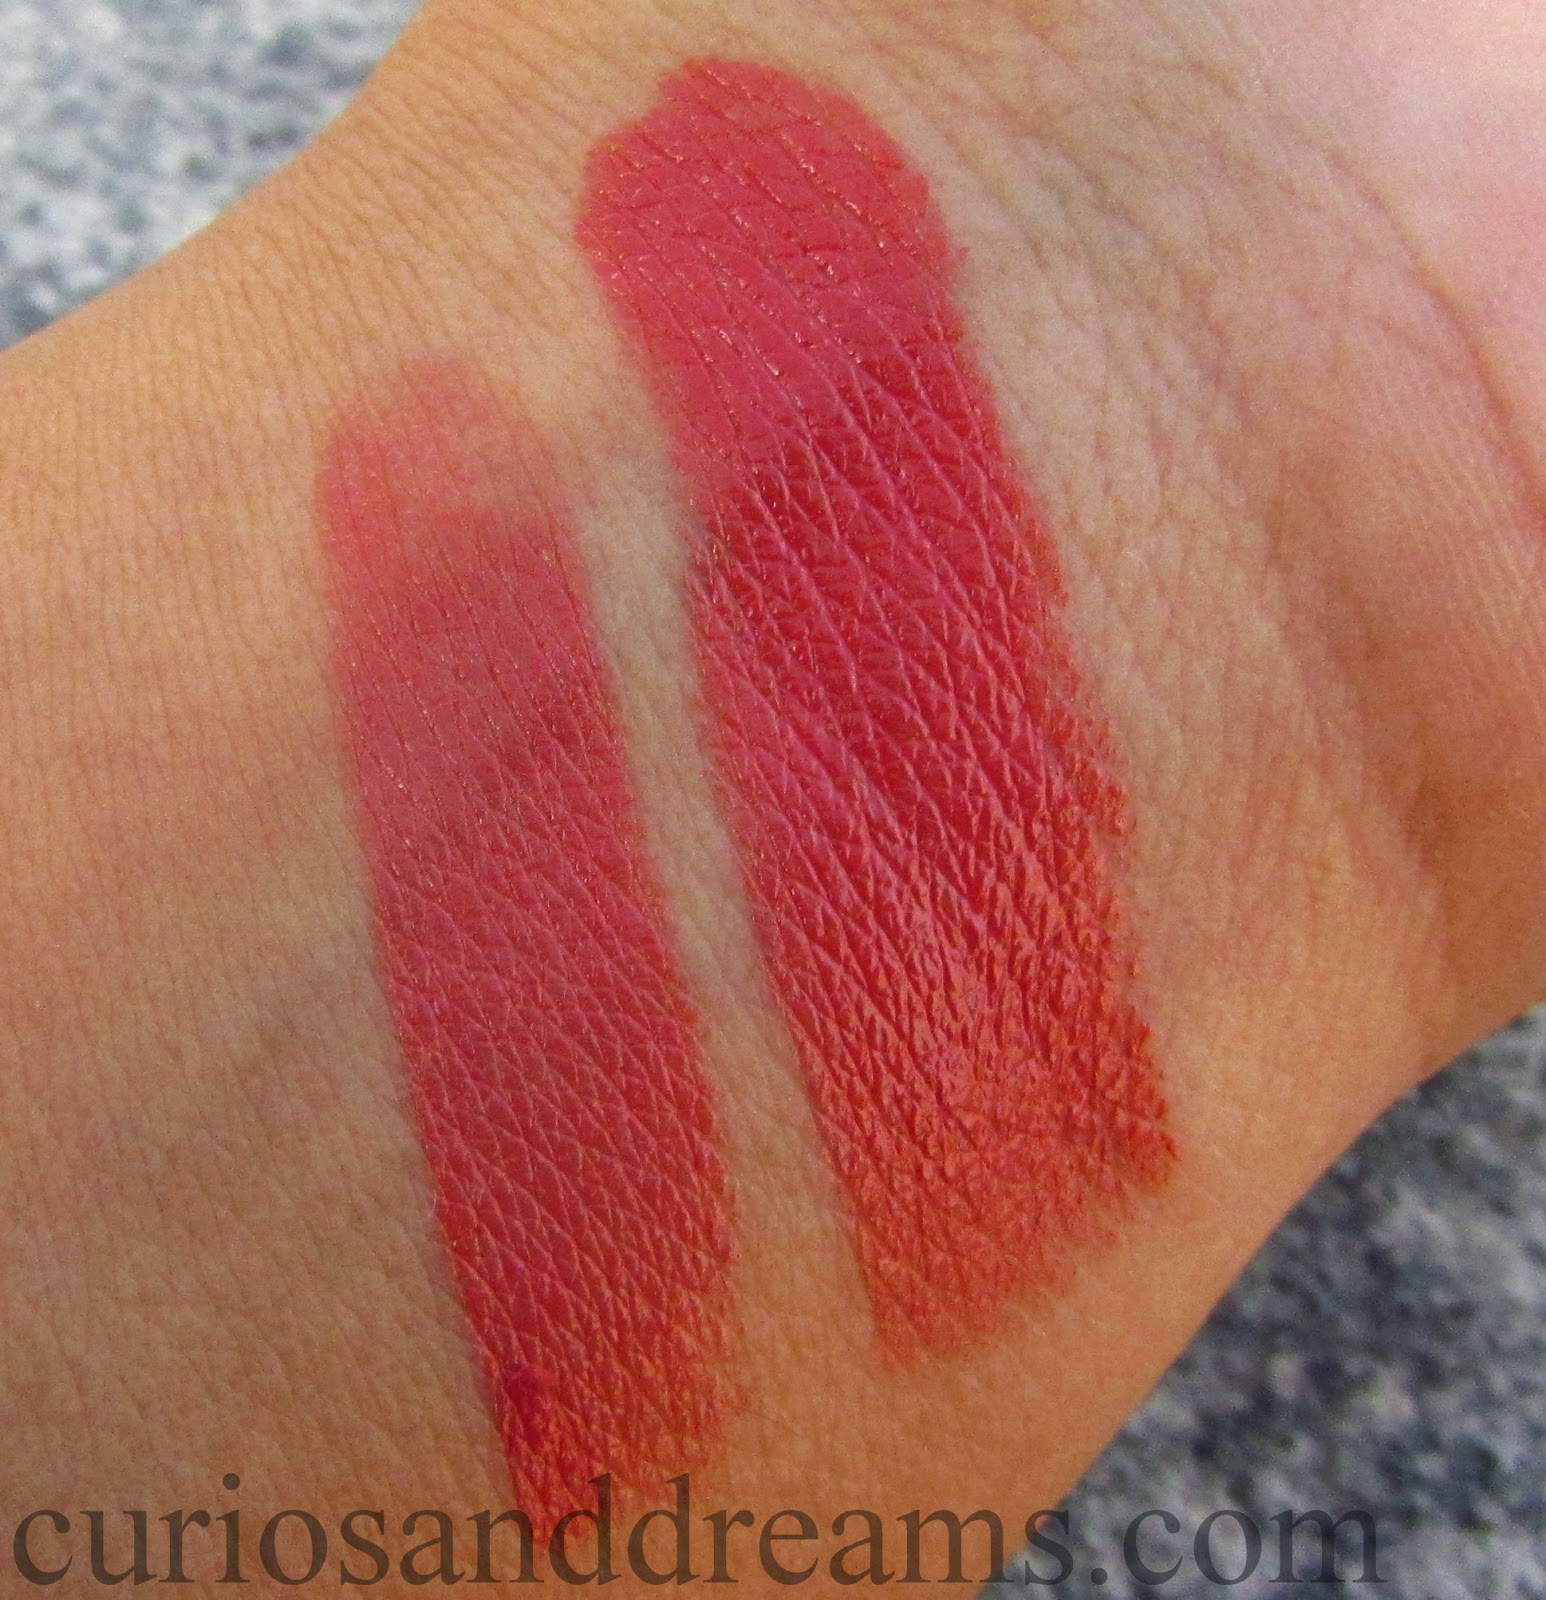 Colorbar Nude Coral lipstick, Colorbar Nude Coral lipstick review, Colorbar Nude Coral lipstick swatch